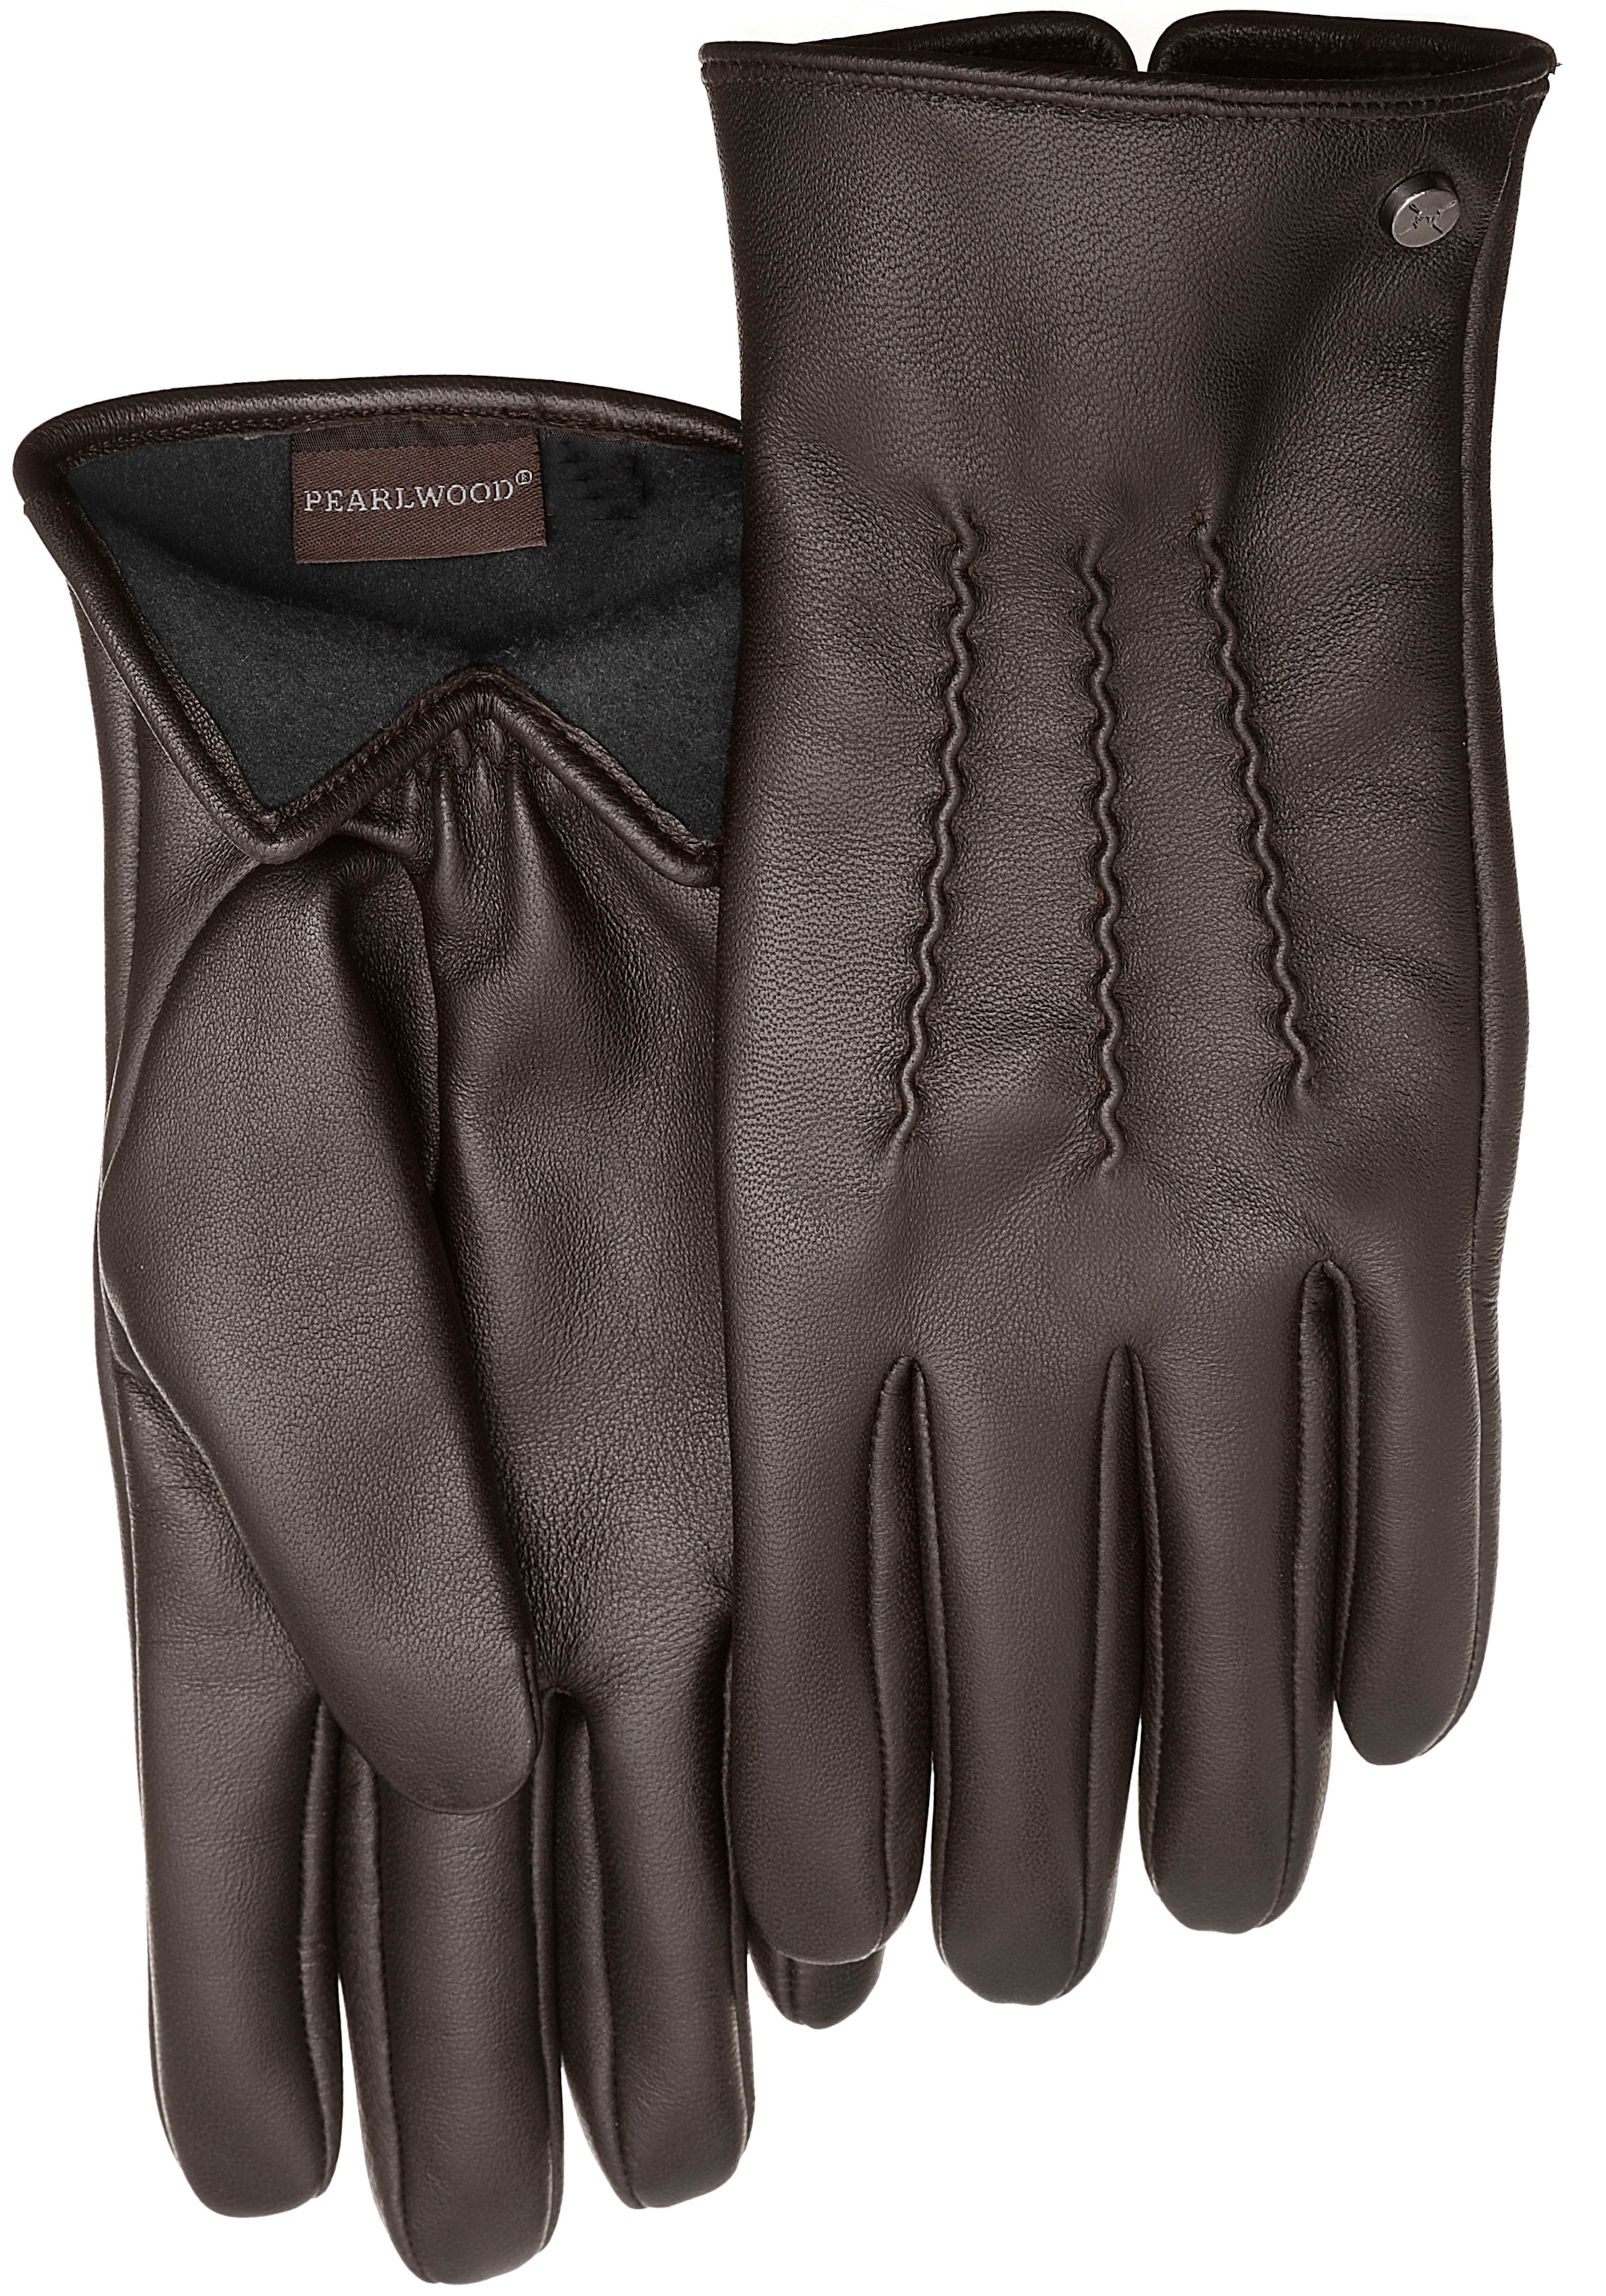 | Herren Handschuhe günstige Preisen Schnäppchen kaufen zu OTTO online